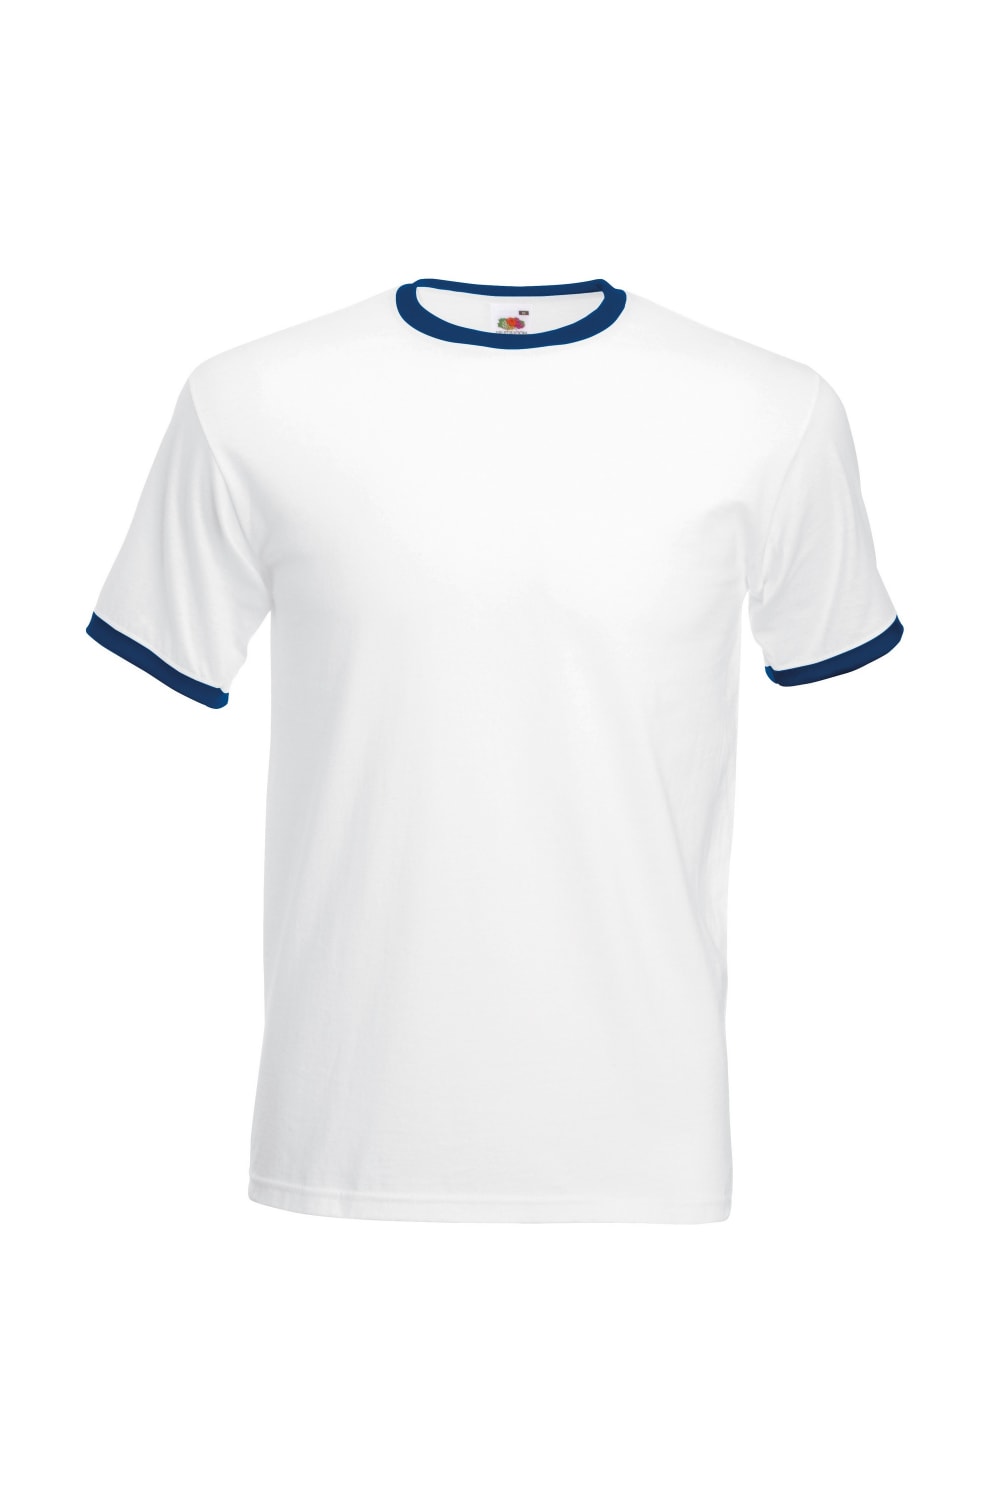 Fruit Of The Loom Mens Ringer Short Sleeve T-Shirt (White/Navy)